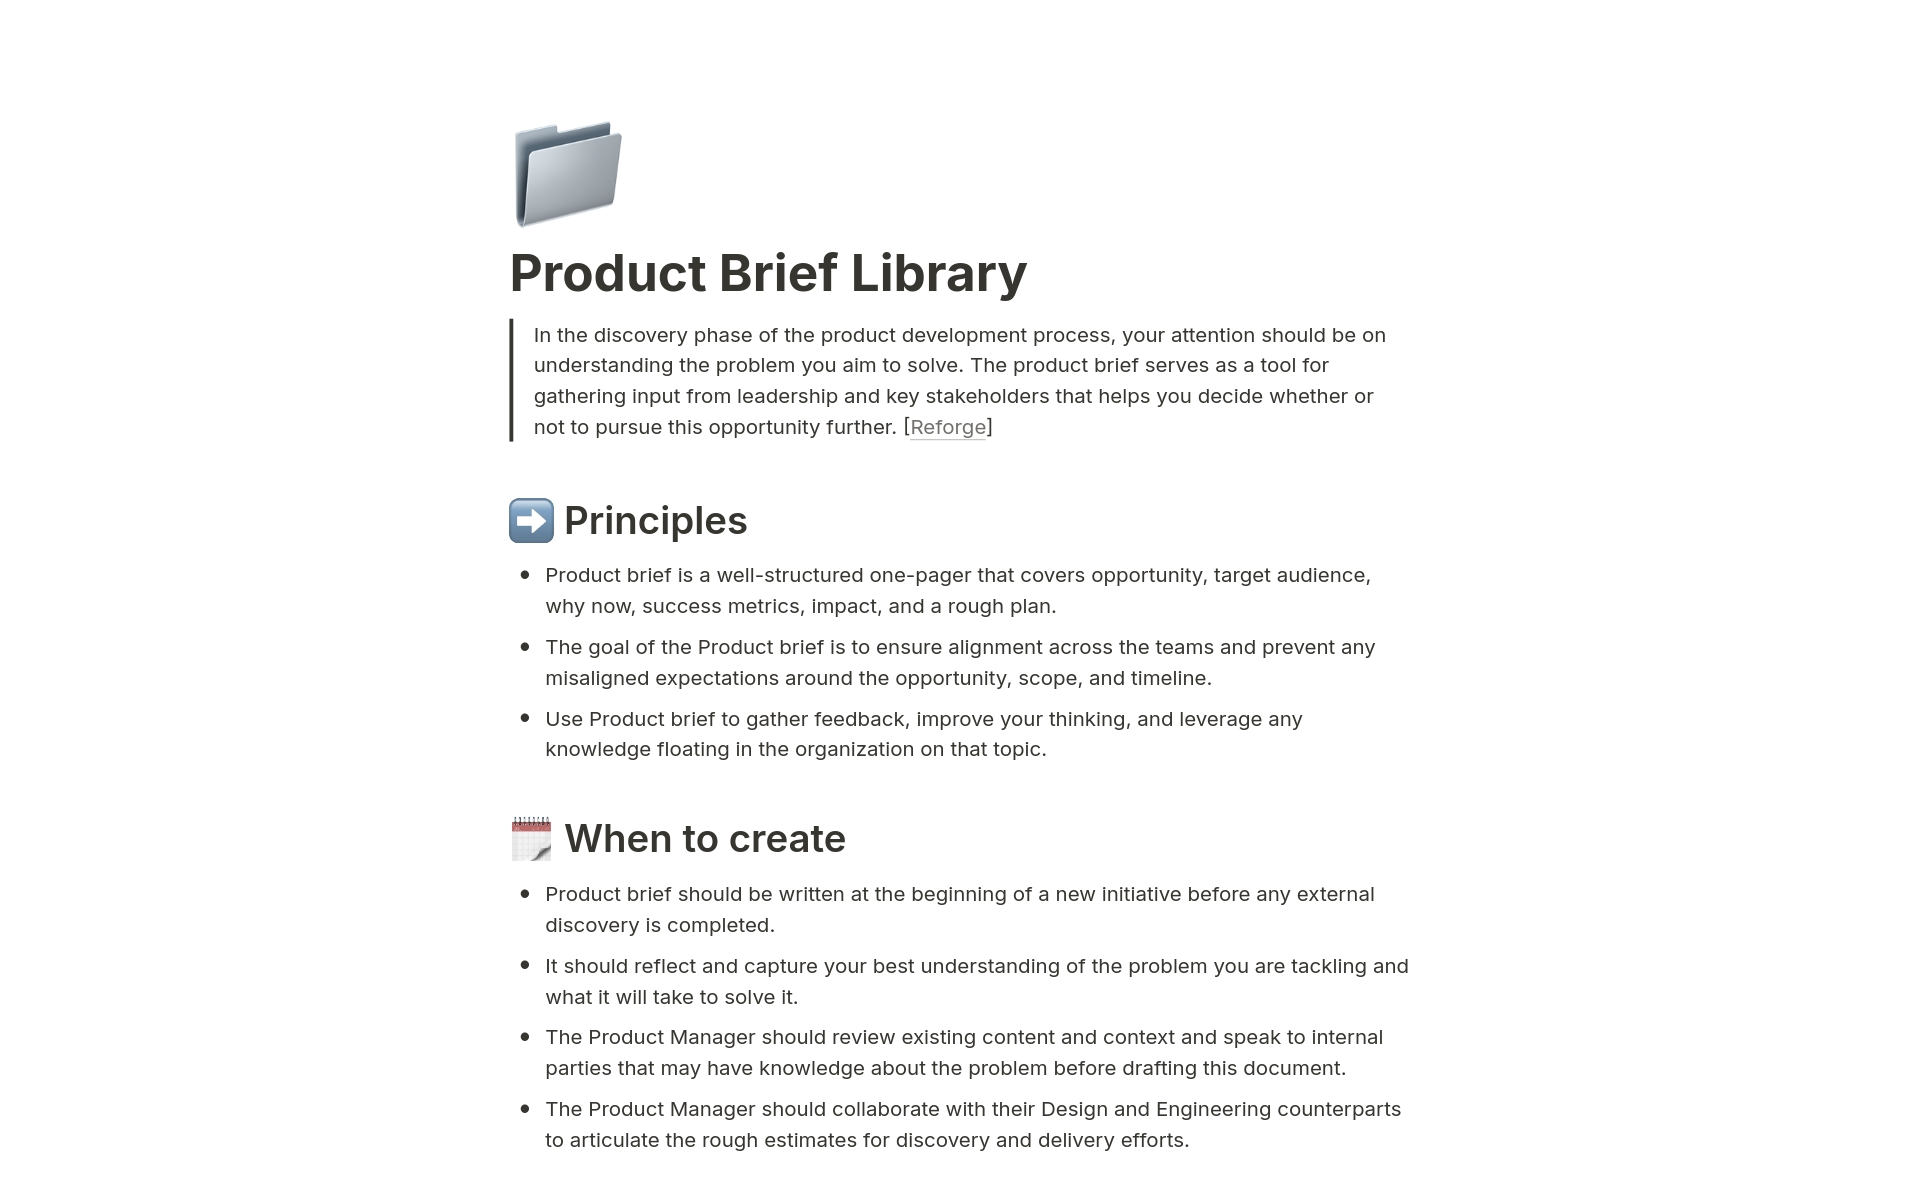 Uma prévia do modelo para Product Brief Library